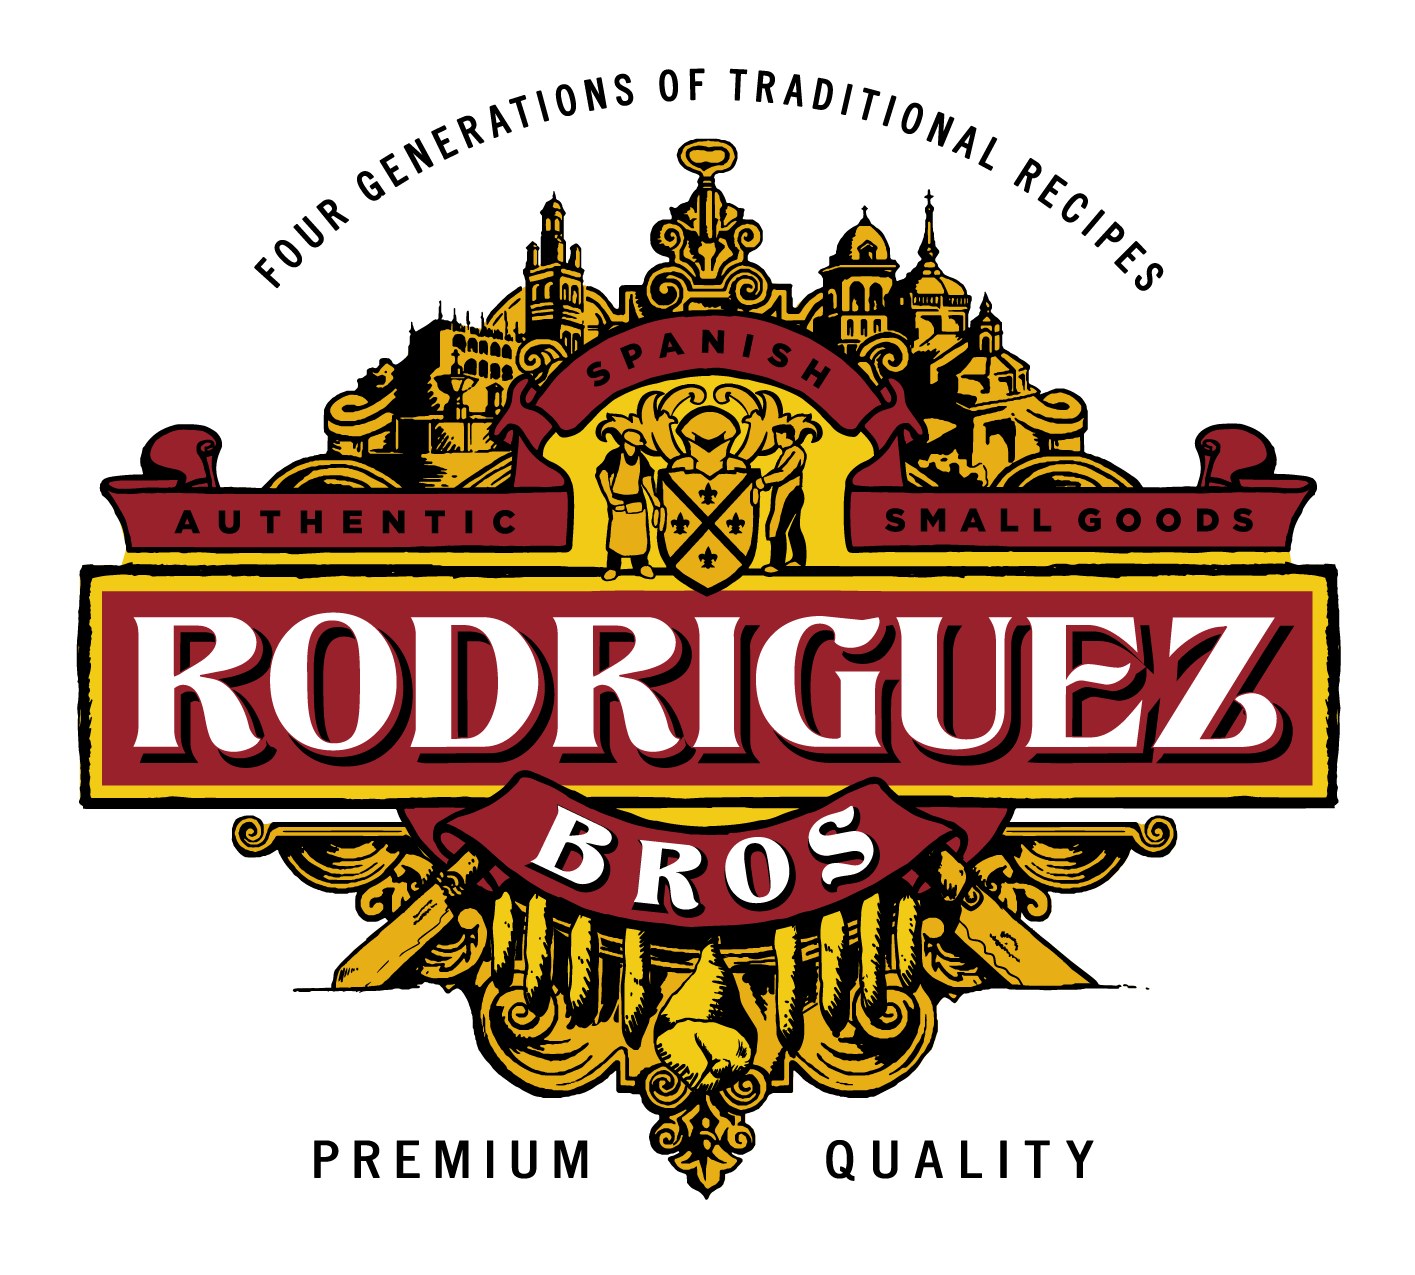 Rodriguez Bros